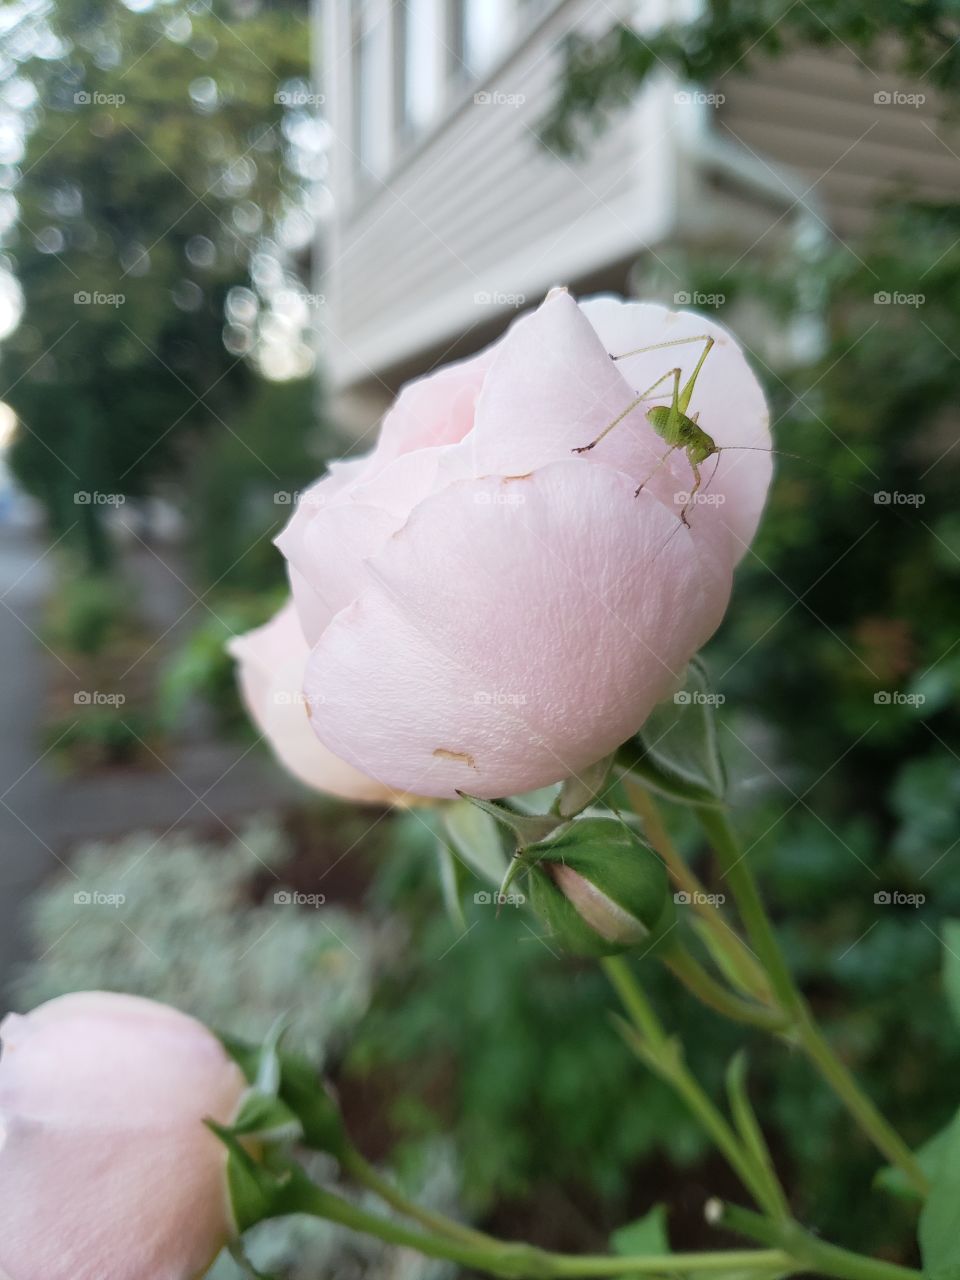 Baby grasshopper on rose